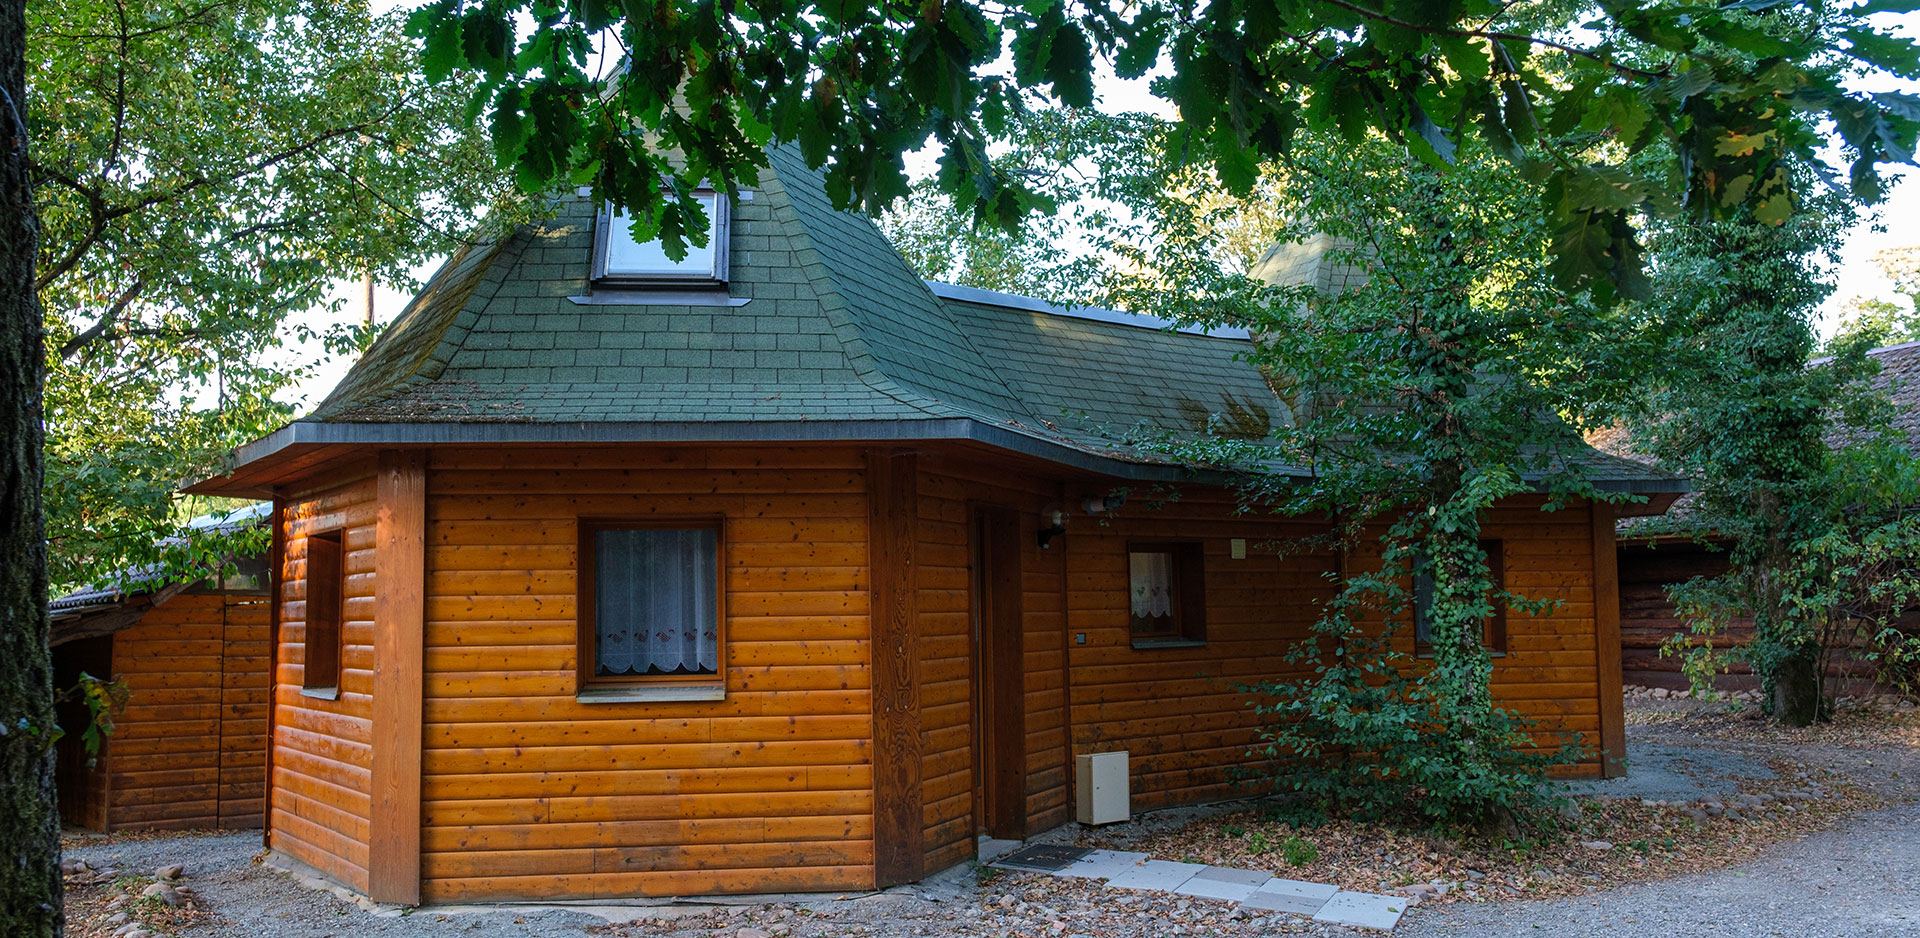 Ferienvermietung, Holz-Chalet in der Nähe von Colmar